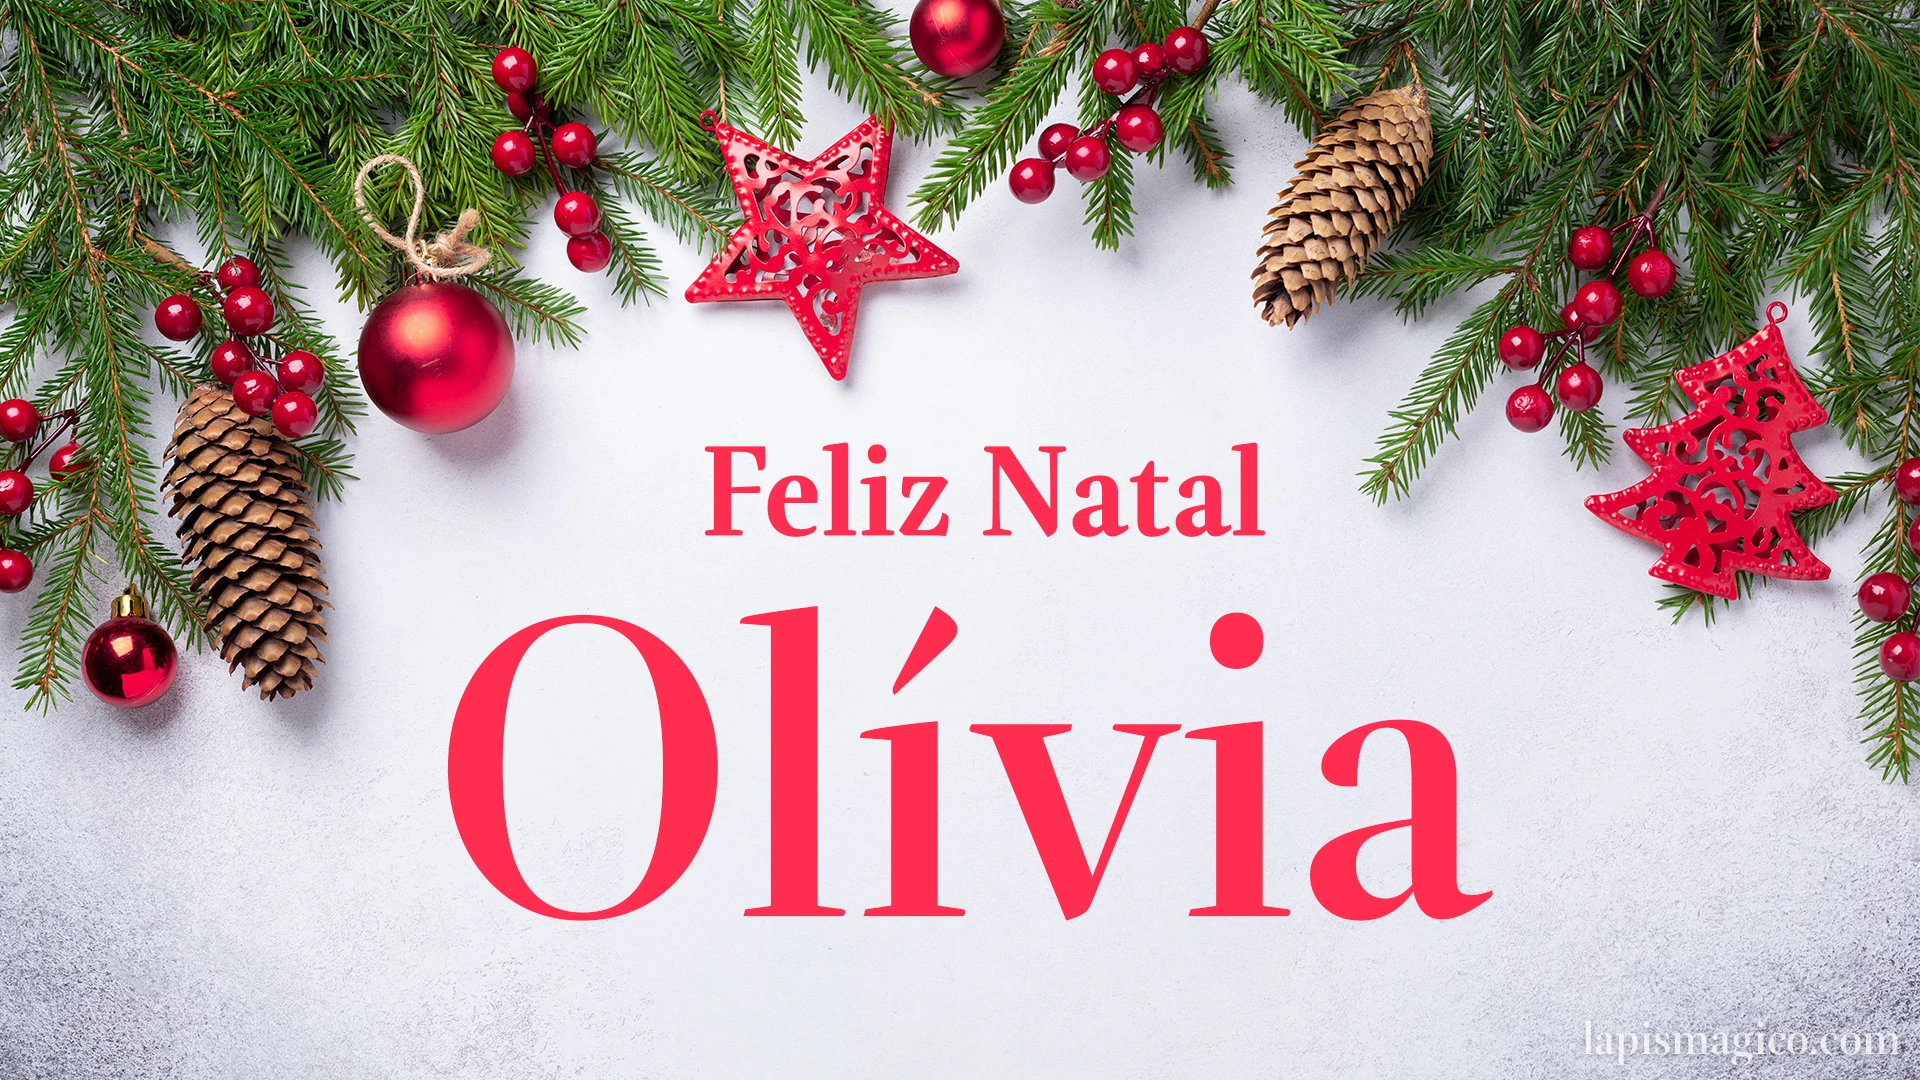 Oh Olívia, cinco postais de Feliz Natal Postal com o teu nome